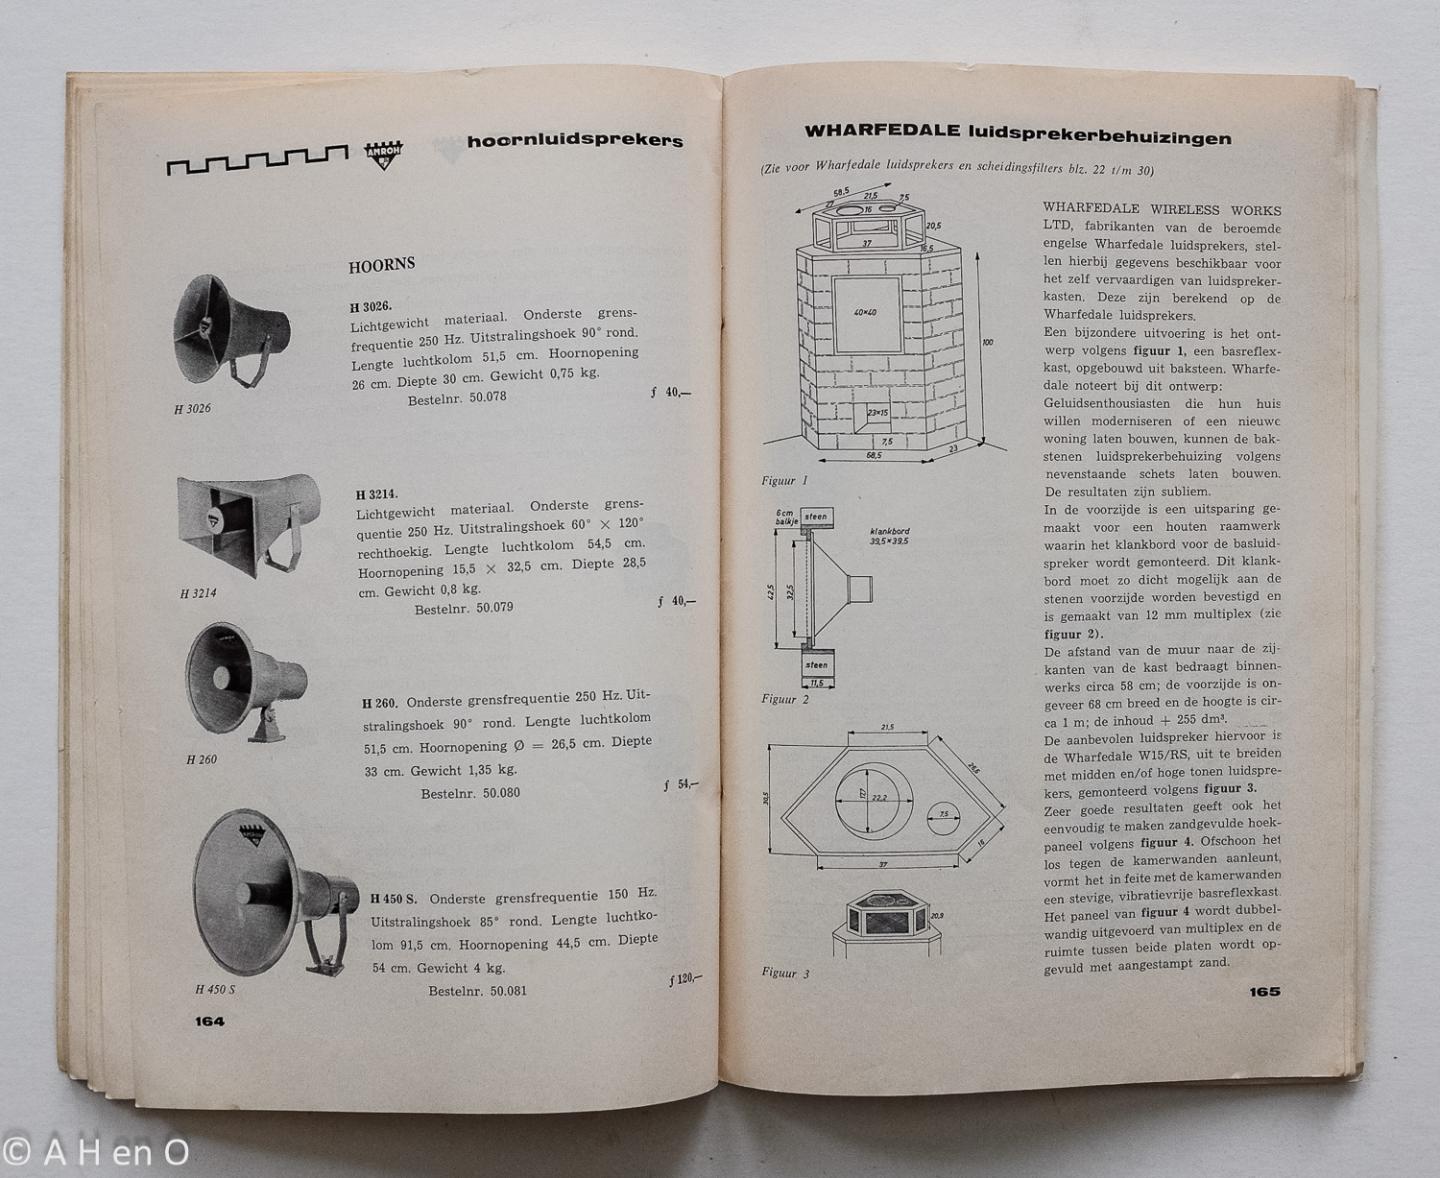  - AMROH catalogus 1966 - Elektronische en mechanische onderdelen - Deel 2